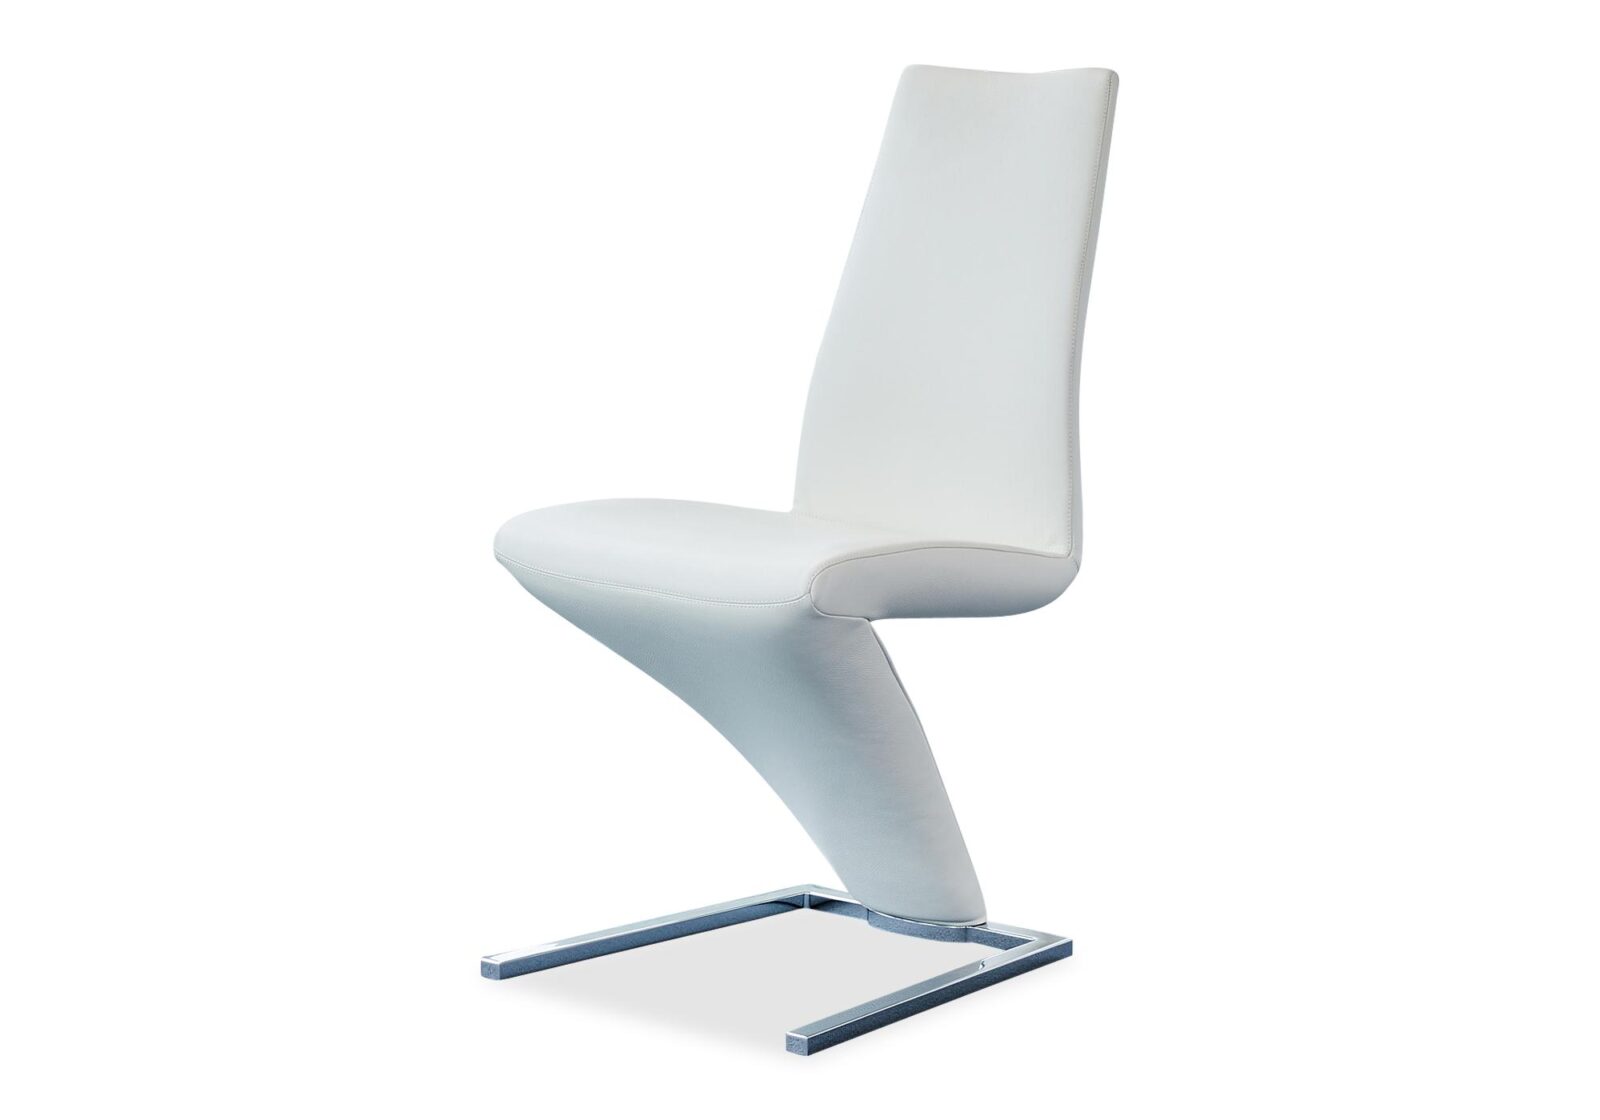 Hochmoderner Stuhl 7800 Rolf Benz. Bezug: Leder. Farbe: Weiss. Erhältlich bei Möbel Gallati.